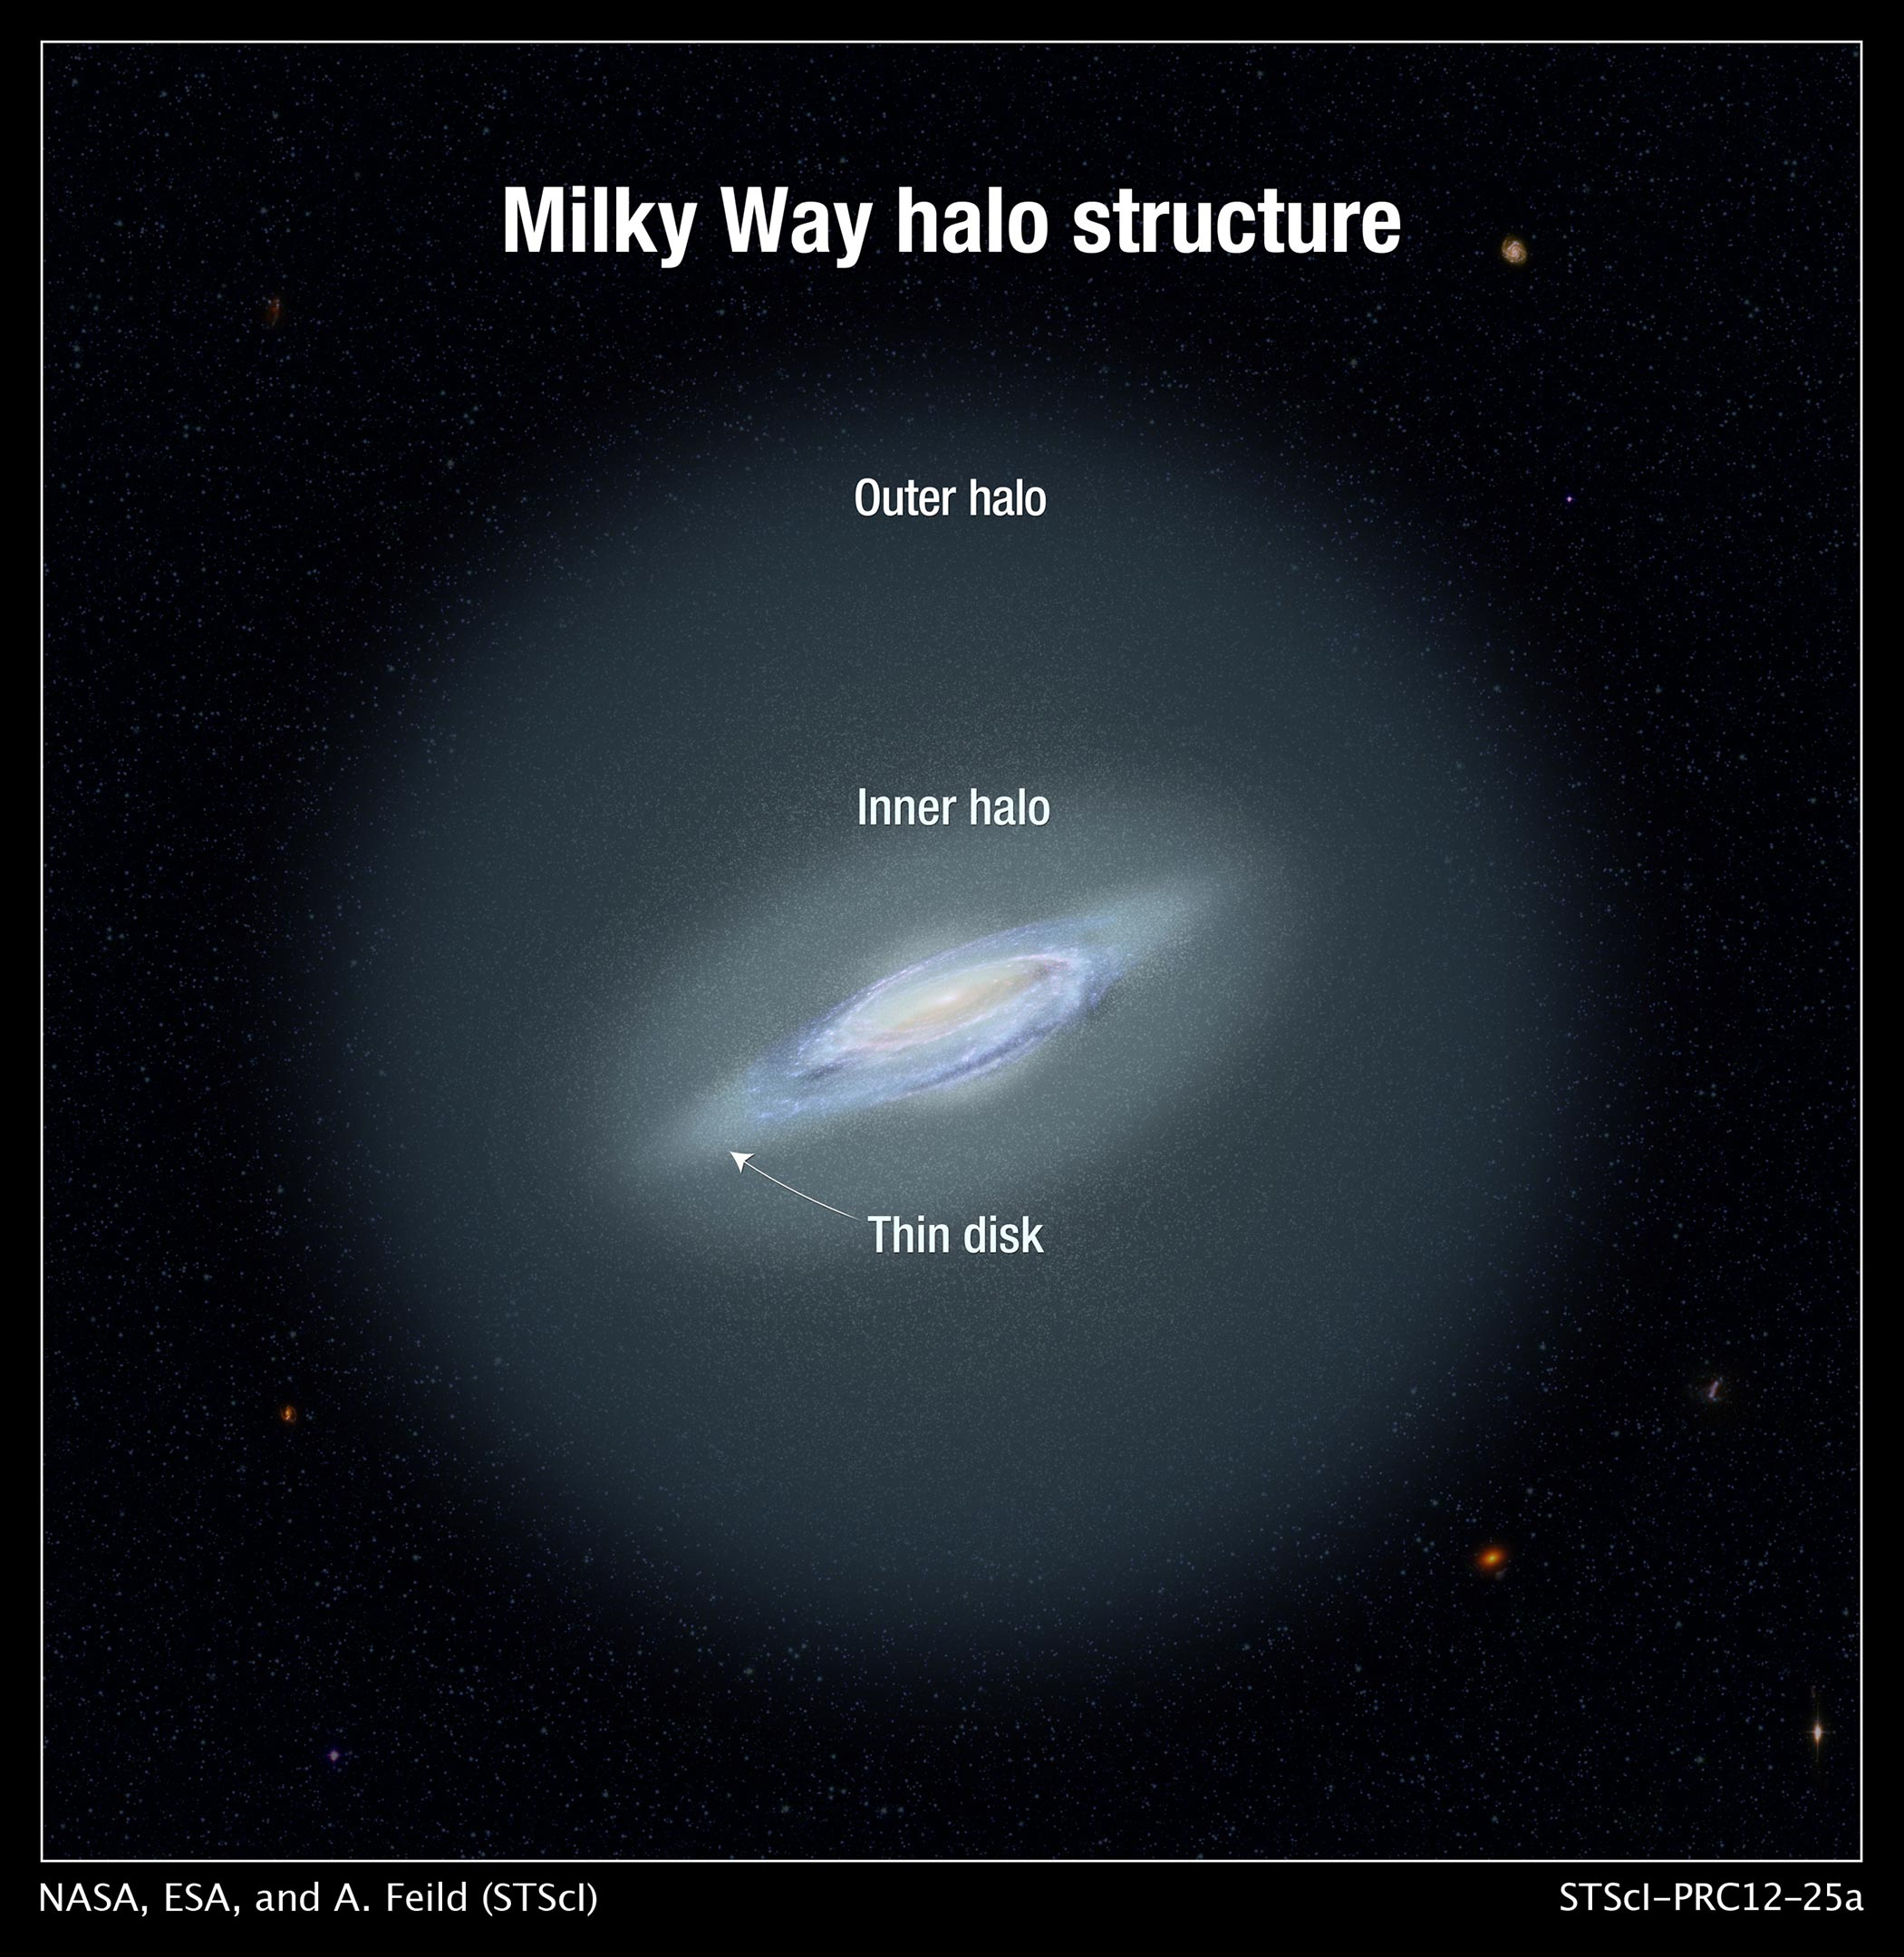 天文学家发现银河系光环中最遥远的恒星 超过100万光年的距离